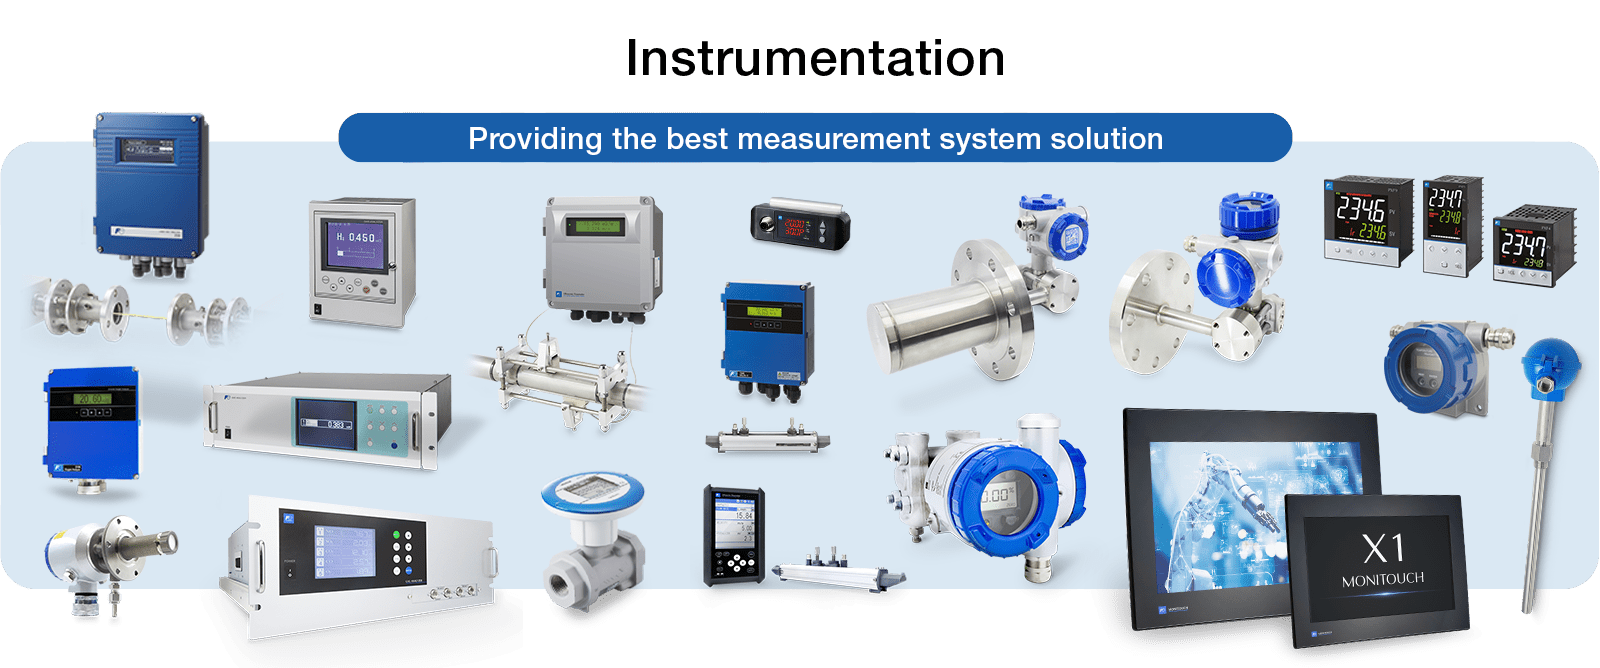 instrumentos y equipos de medición